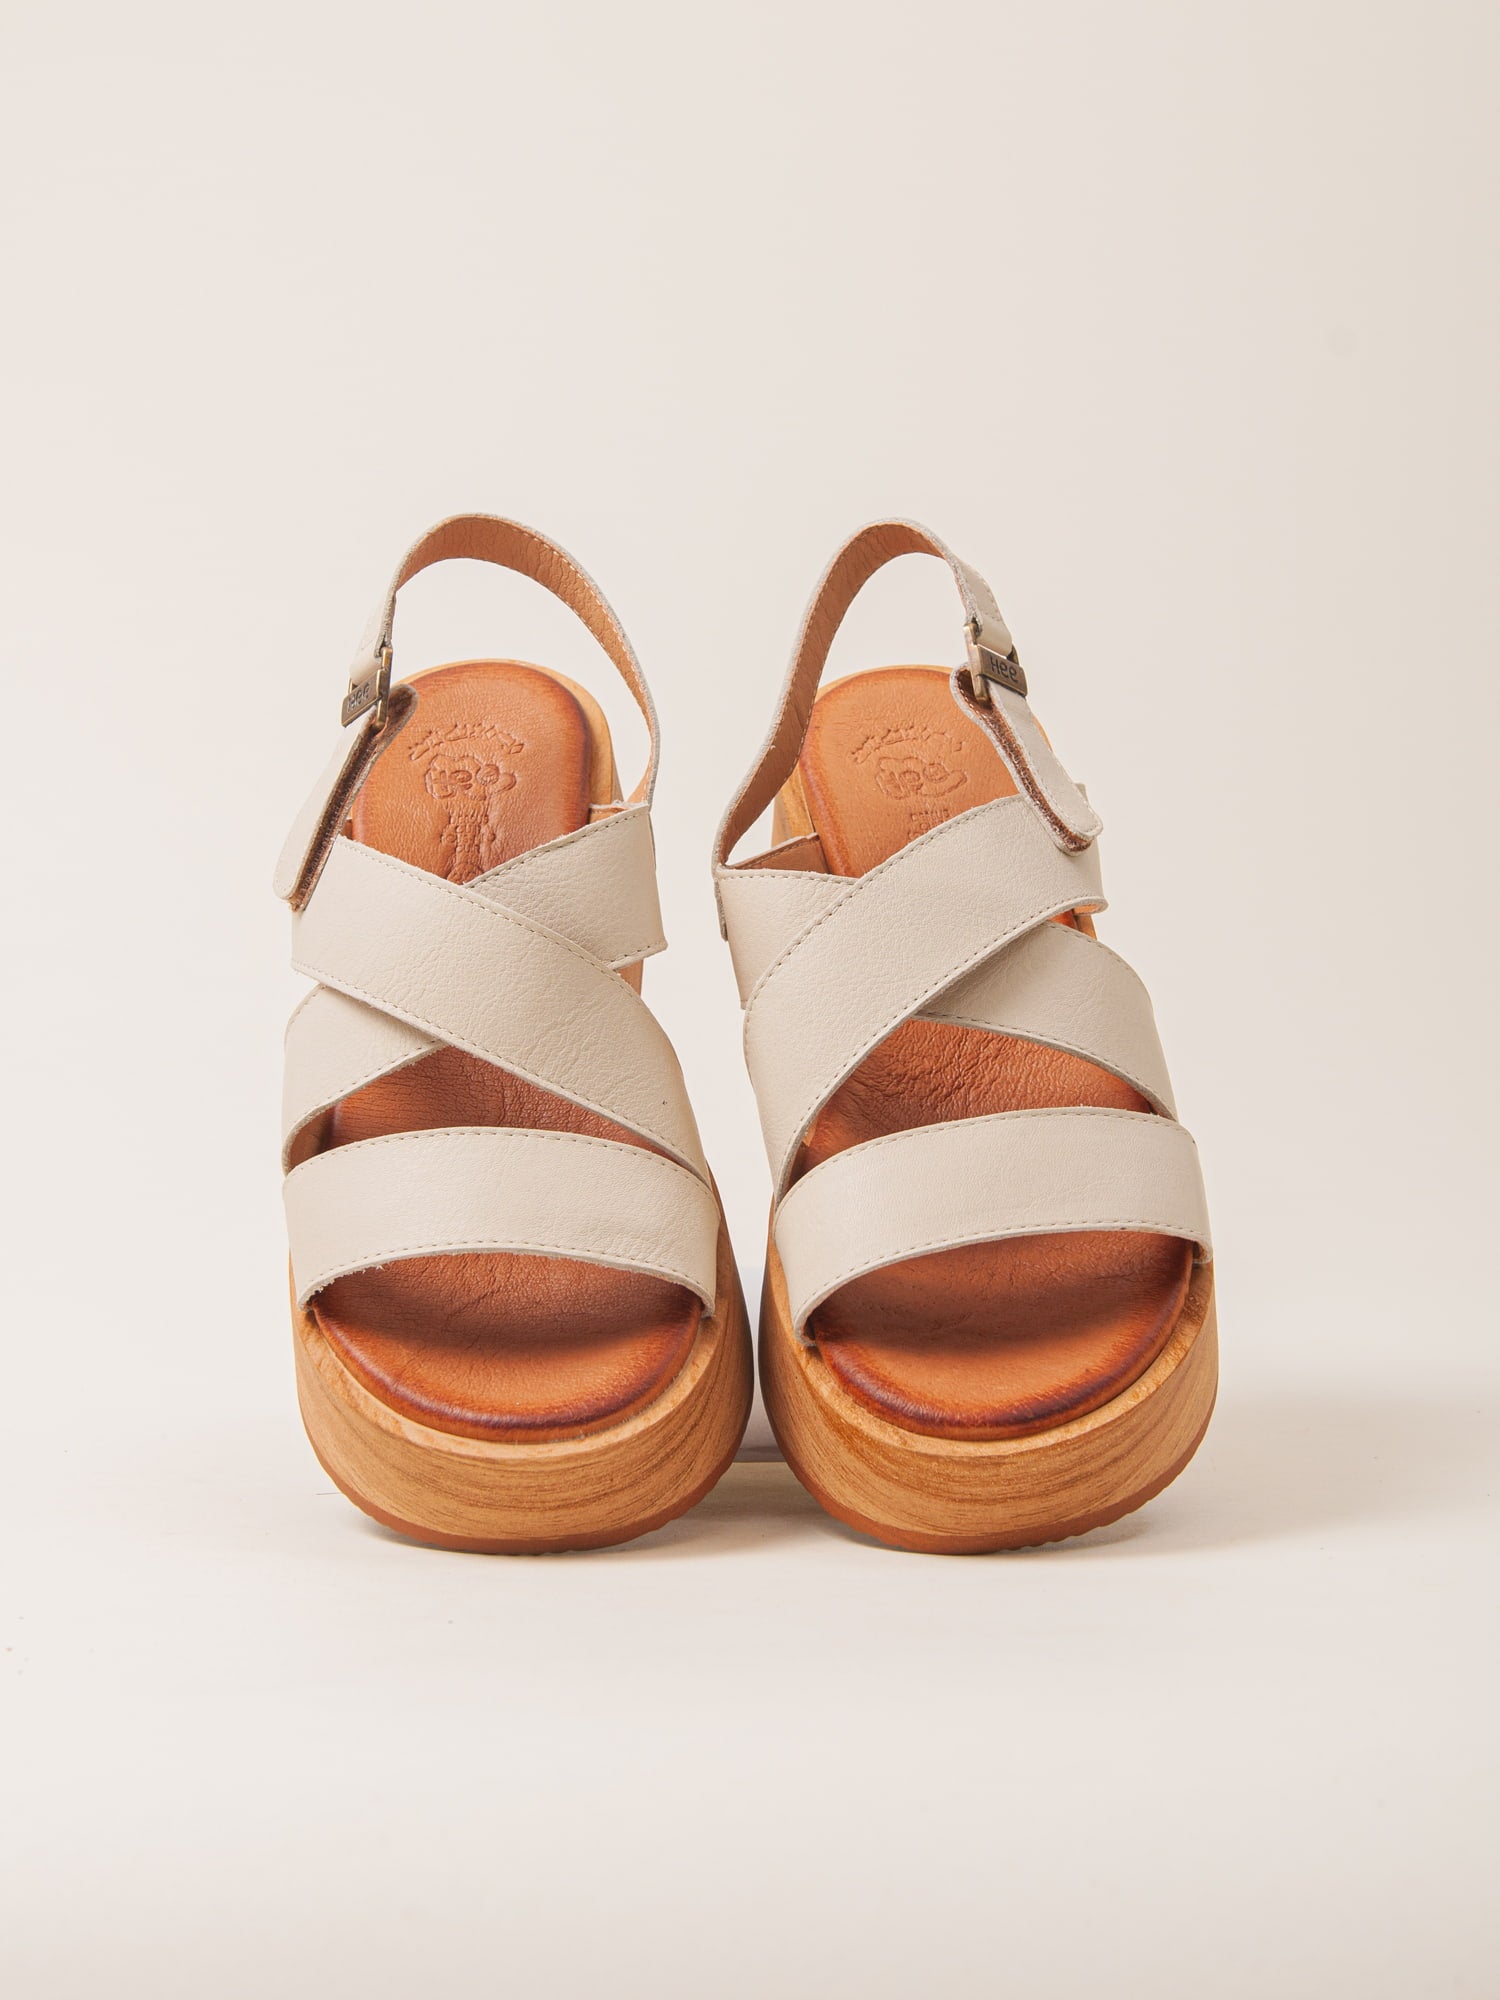 Sandalias blancas de plataforma cómodas y ligeras. Sandalias ideales para usar todo el día.